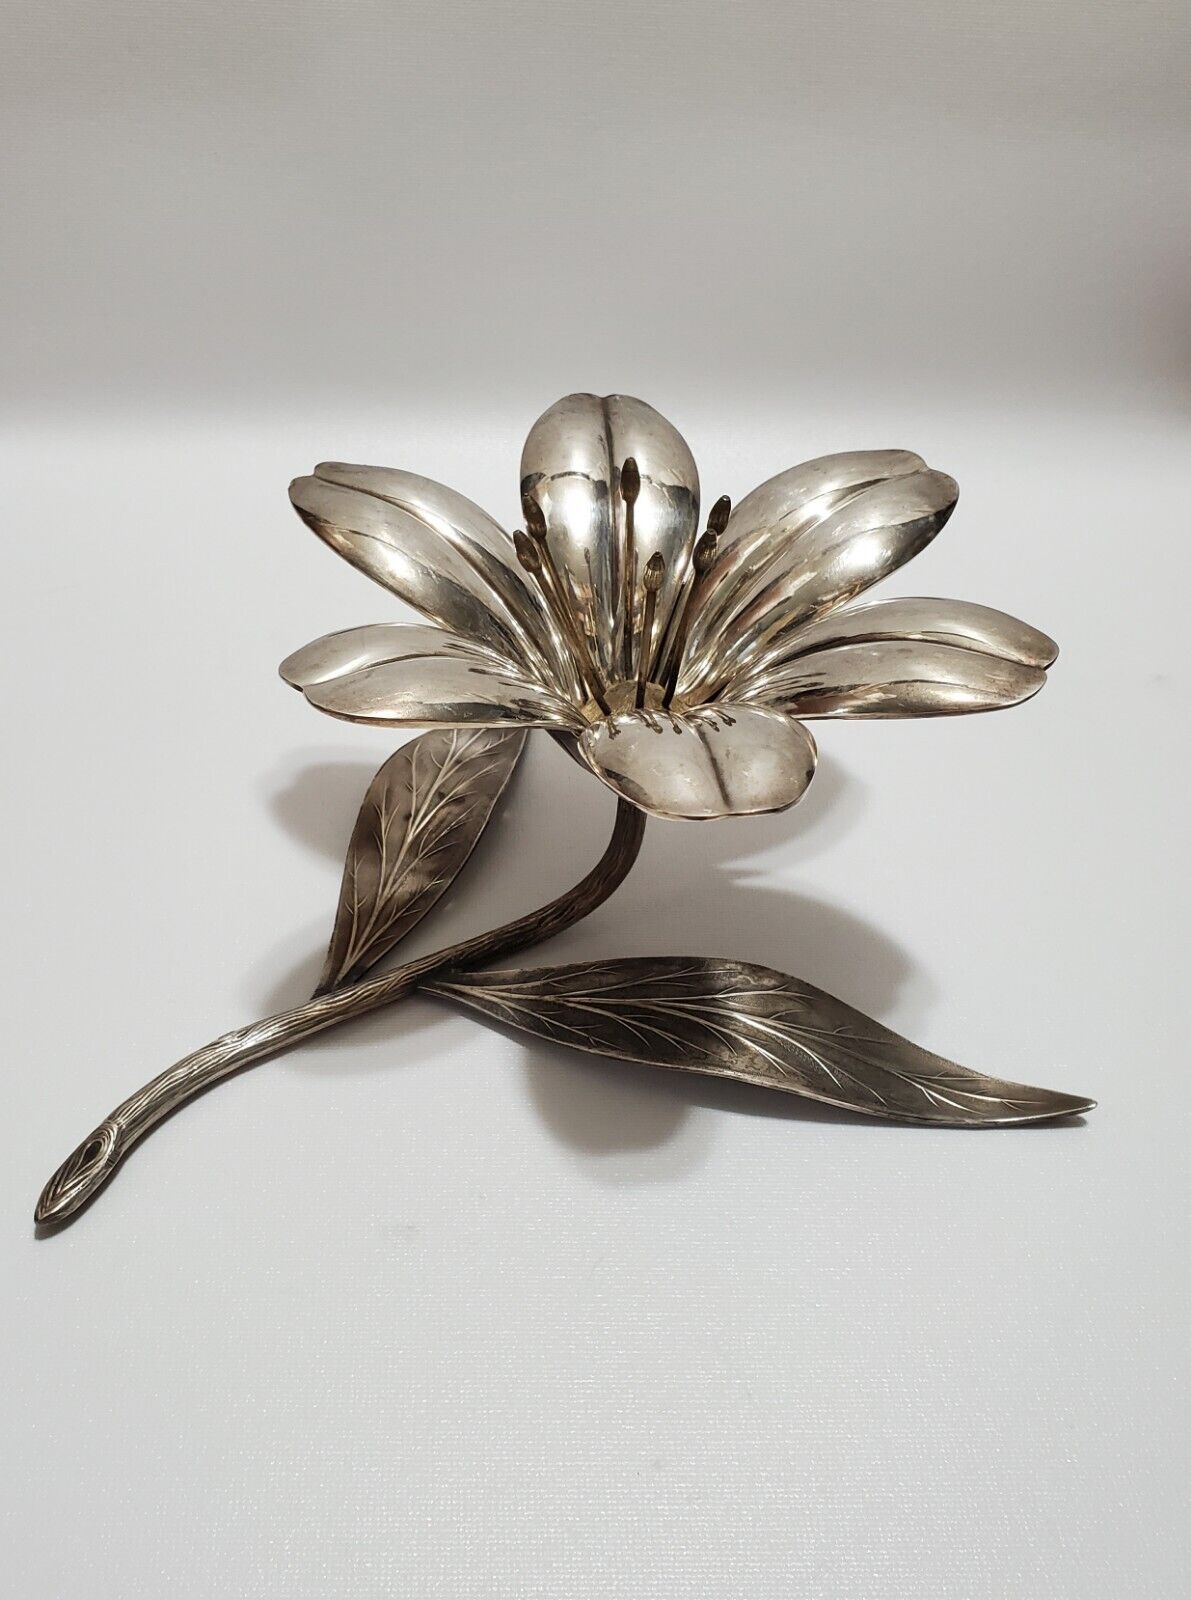 Vintage Art Nouveau Silver Metal Art Flower Ashtray, Removable Petals, France